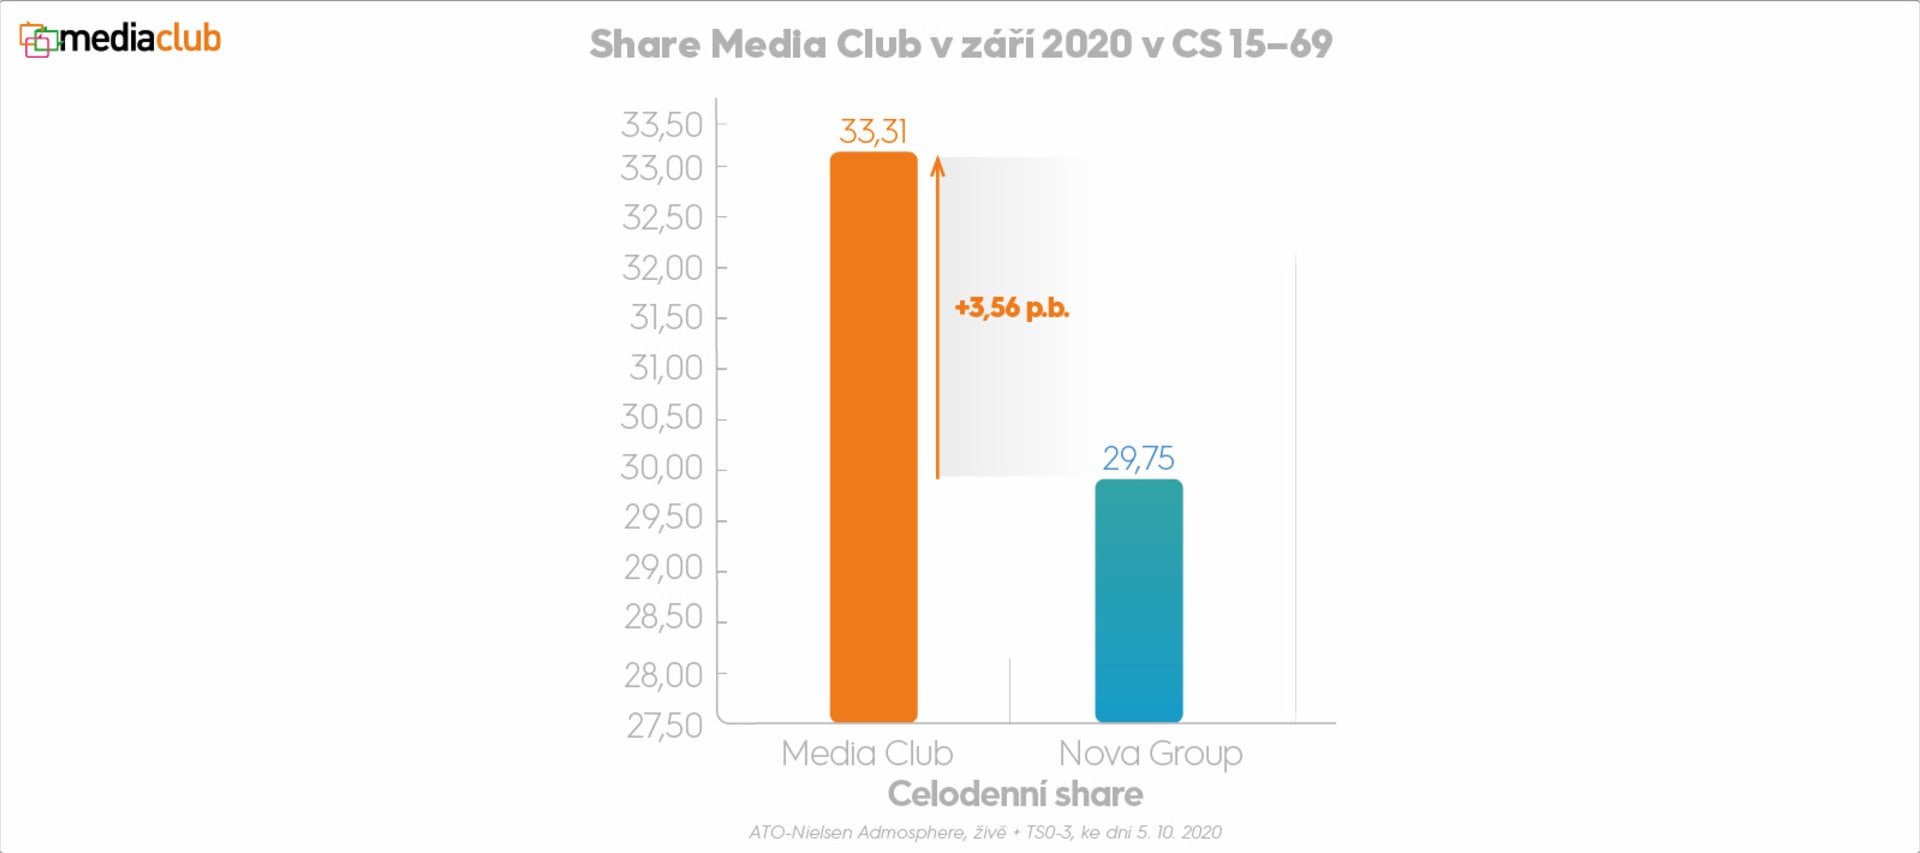 Share Media Club v září 2020 v CS 15 - 69